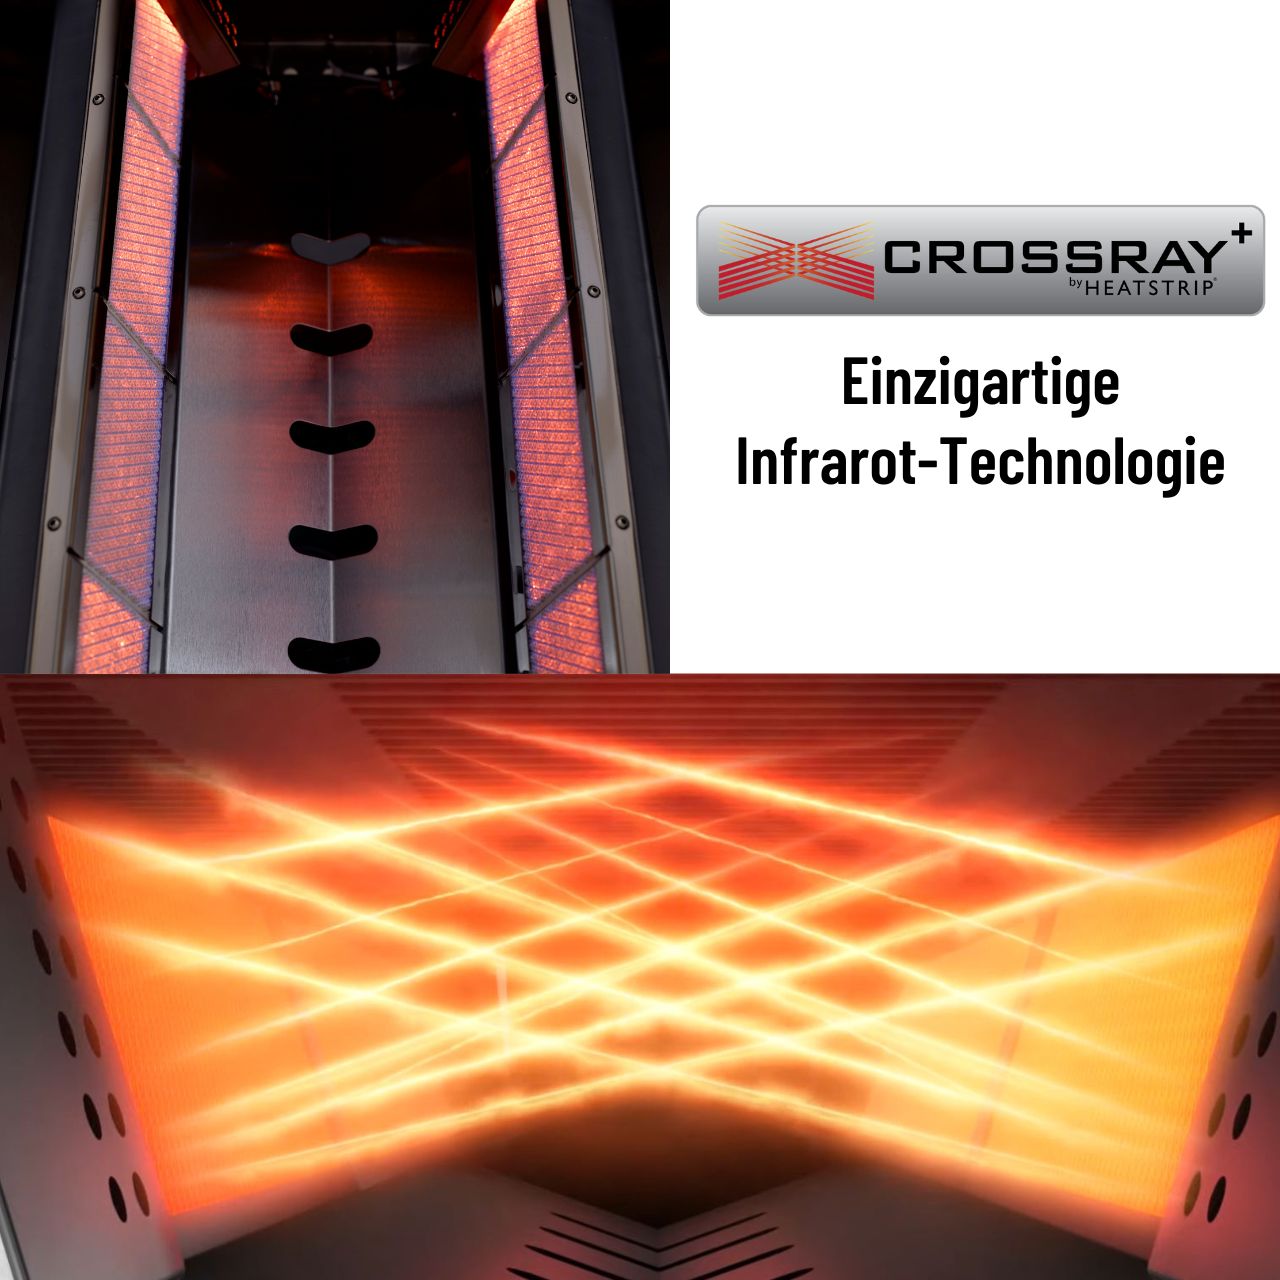 Crossray+ 4 Infrarot-Keramikbrenner, Gasgrill, 81 x 40 cm Gussroste